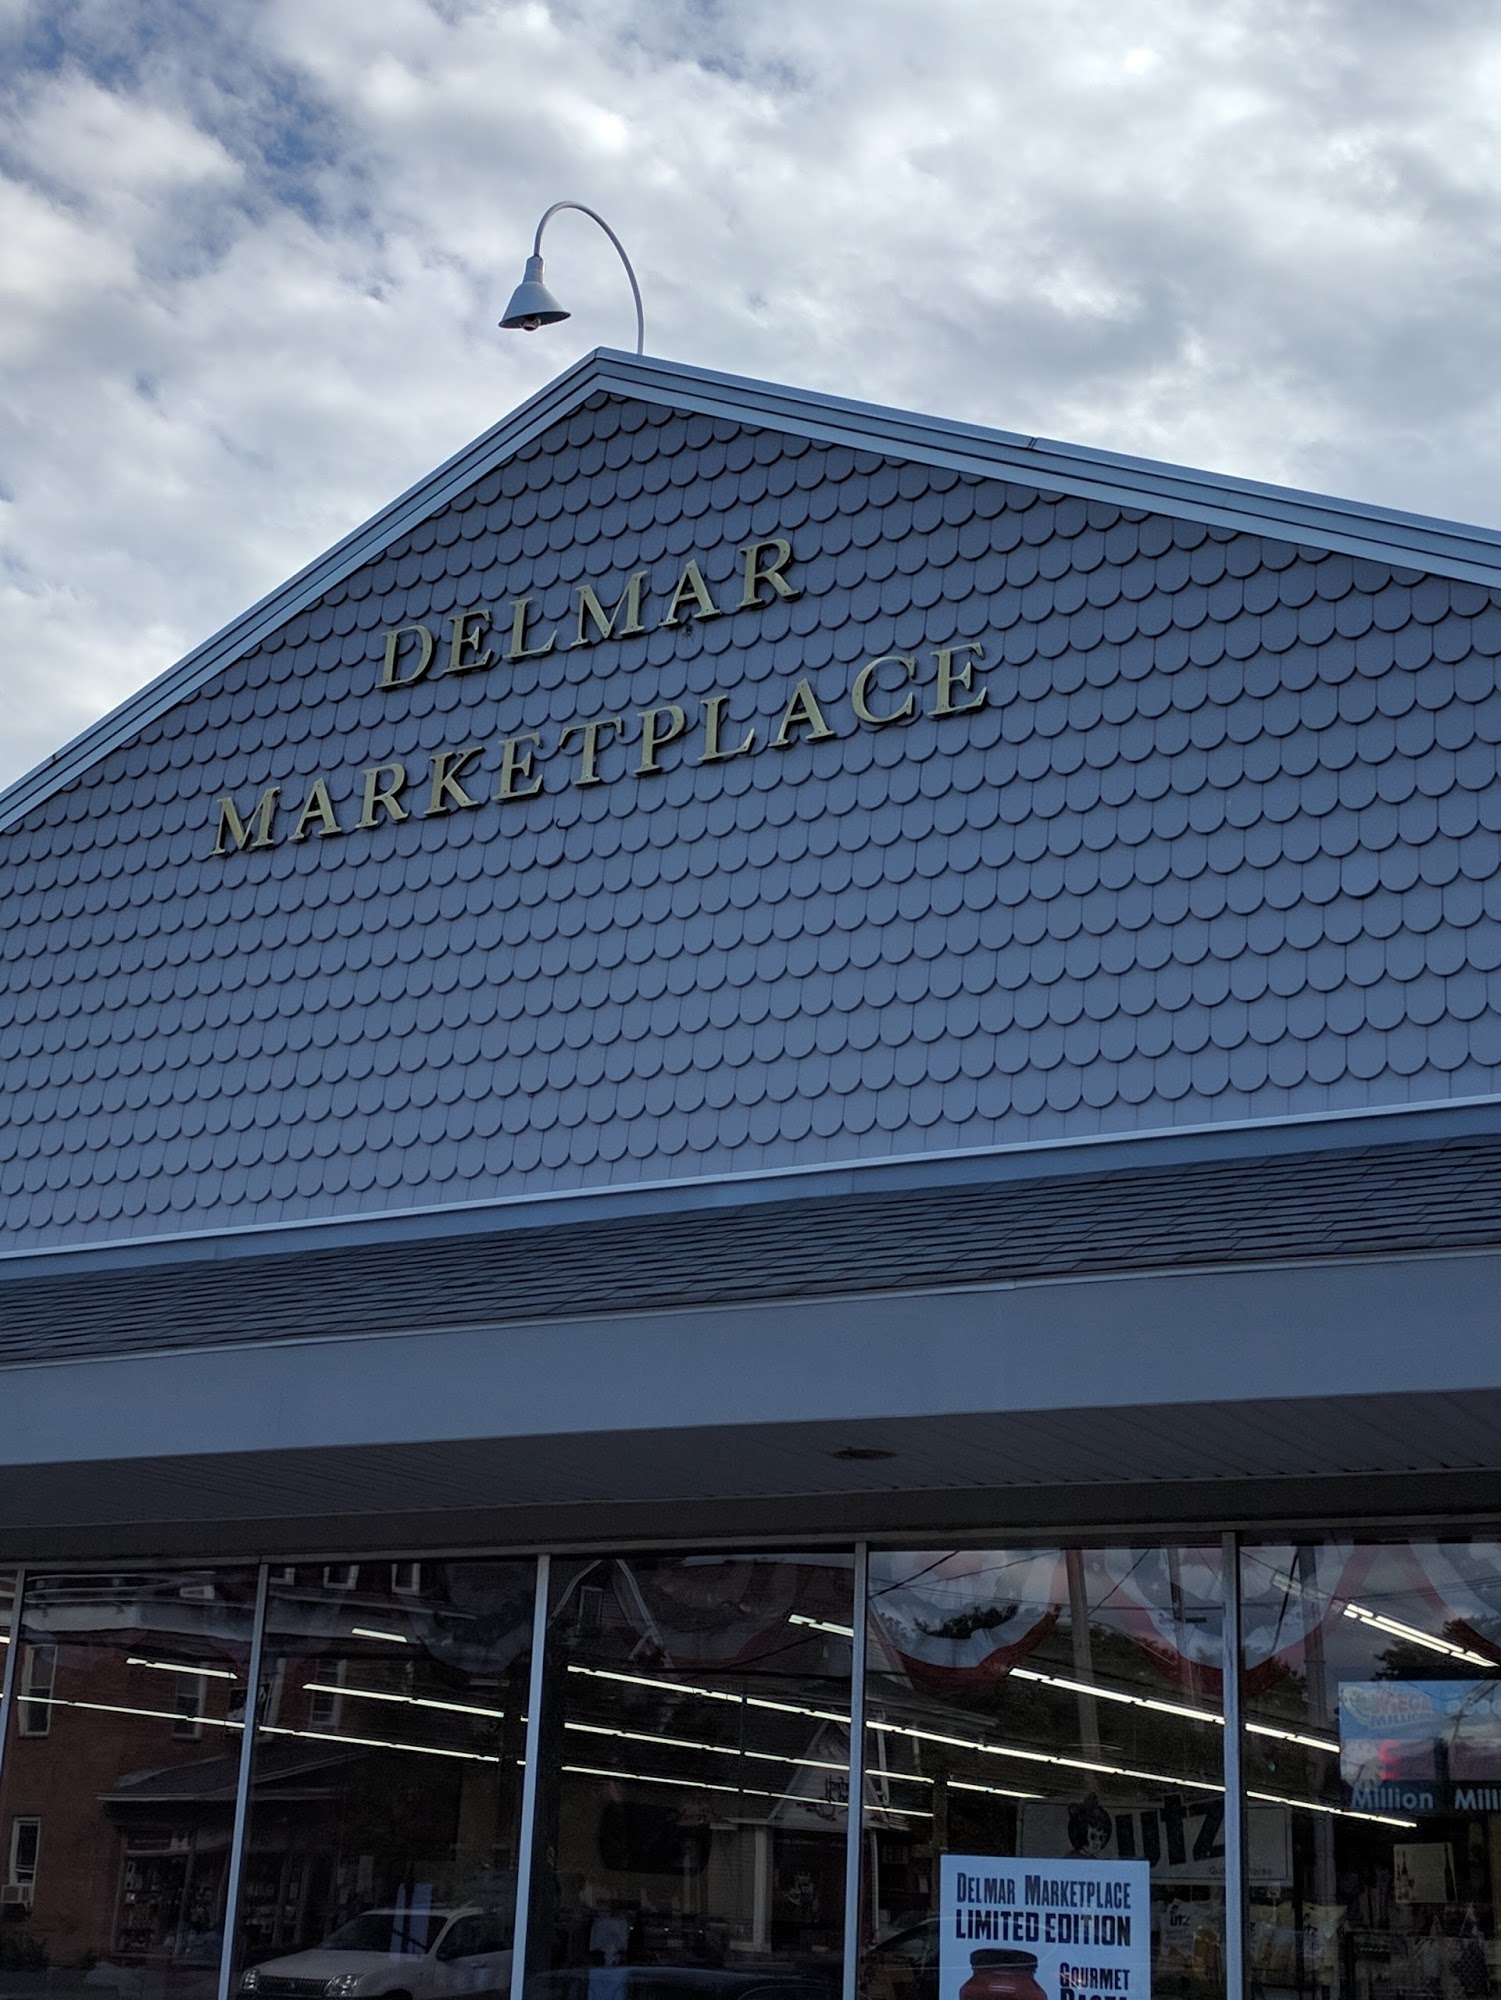 Delmar Marketplace